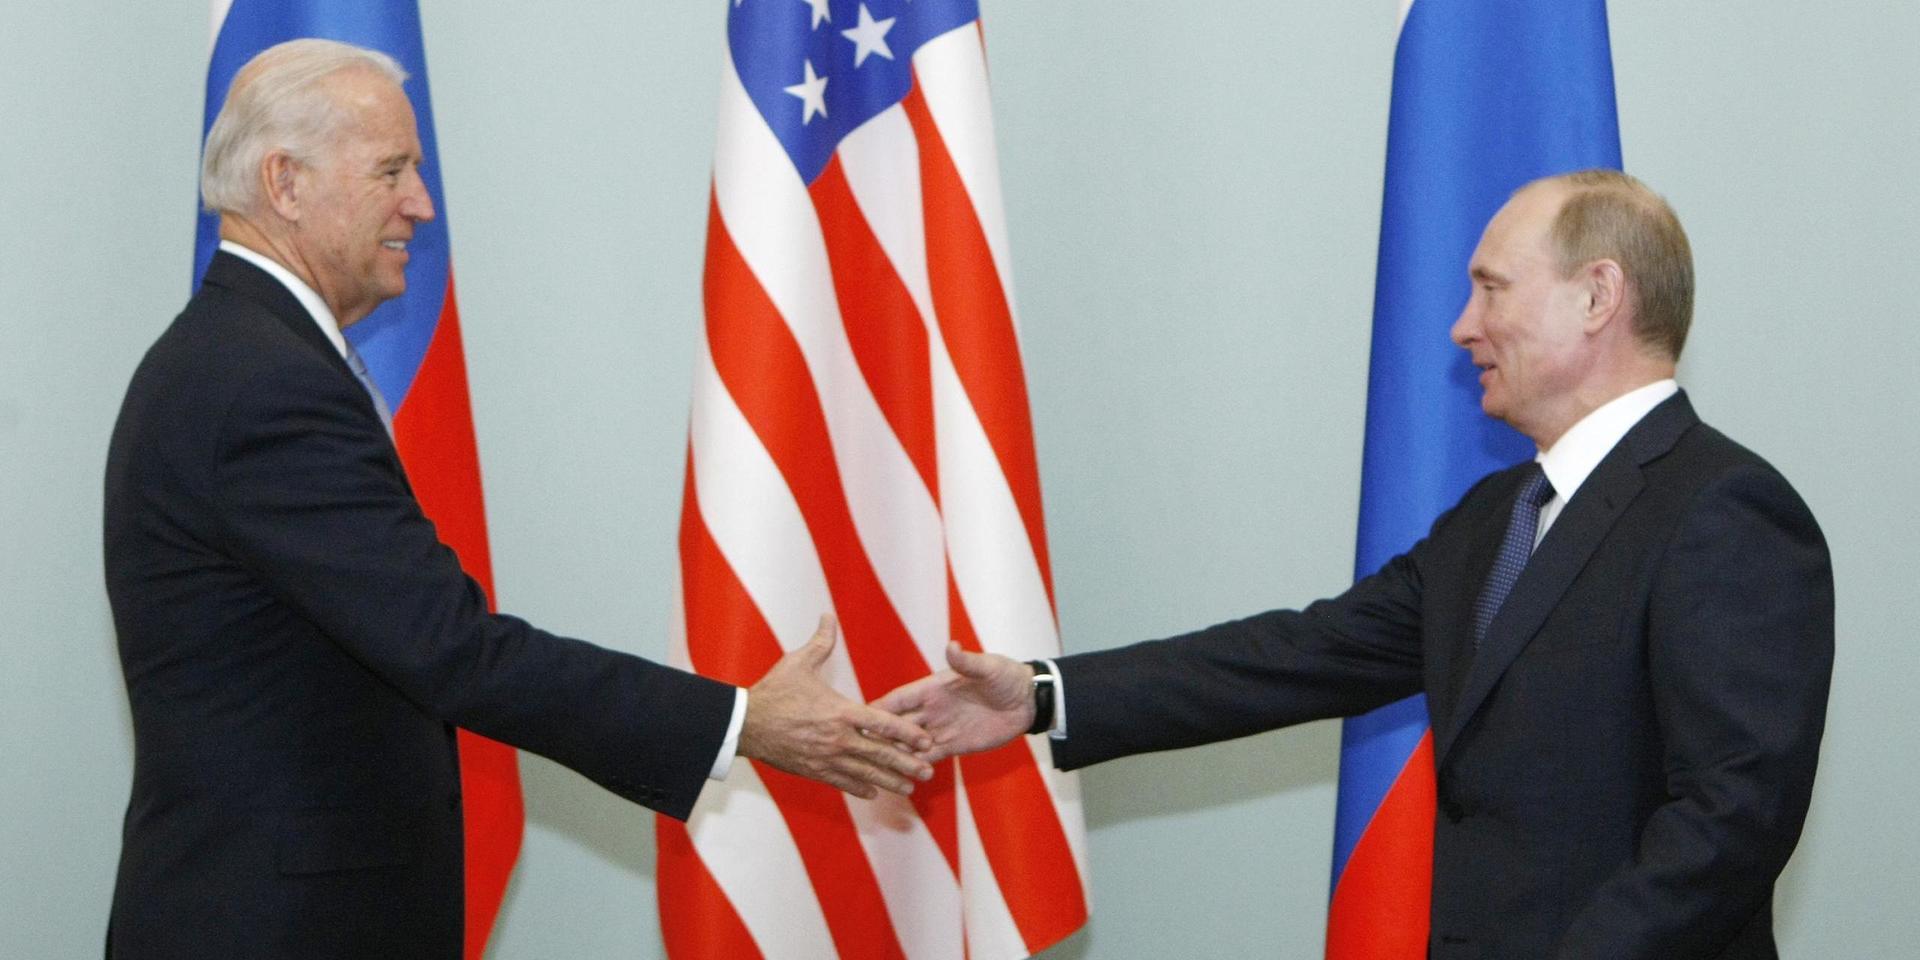 Mötet i Genève blir inte första gången Biden och Putin möts. När Joe Biden var vicepresident i Obama-administrationen möttes de öga mot öga.